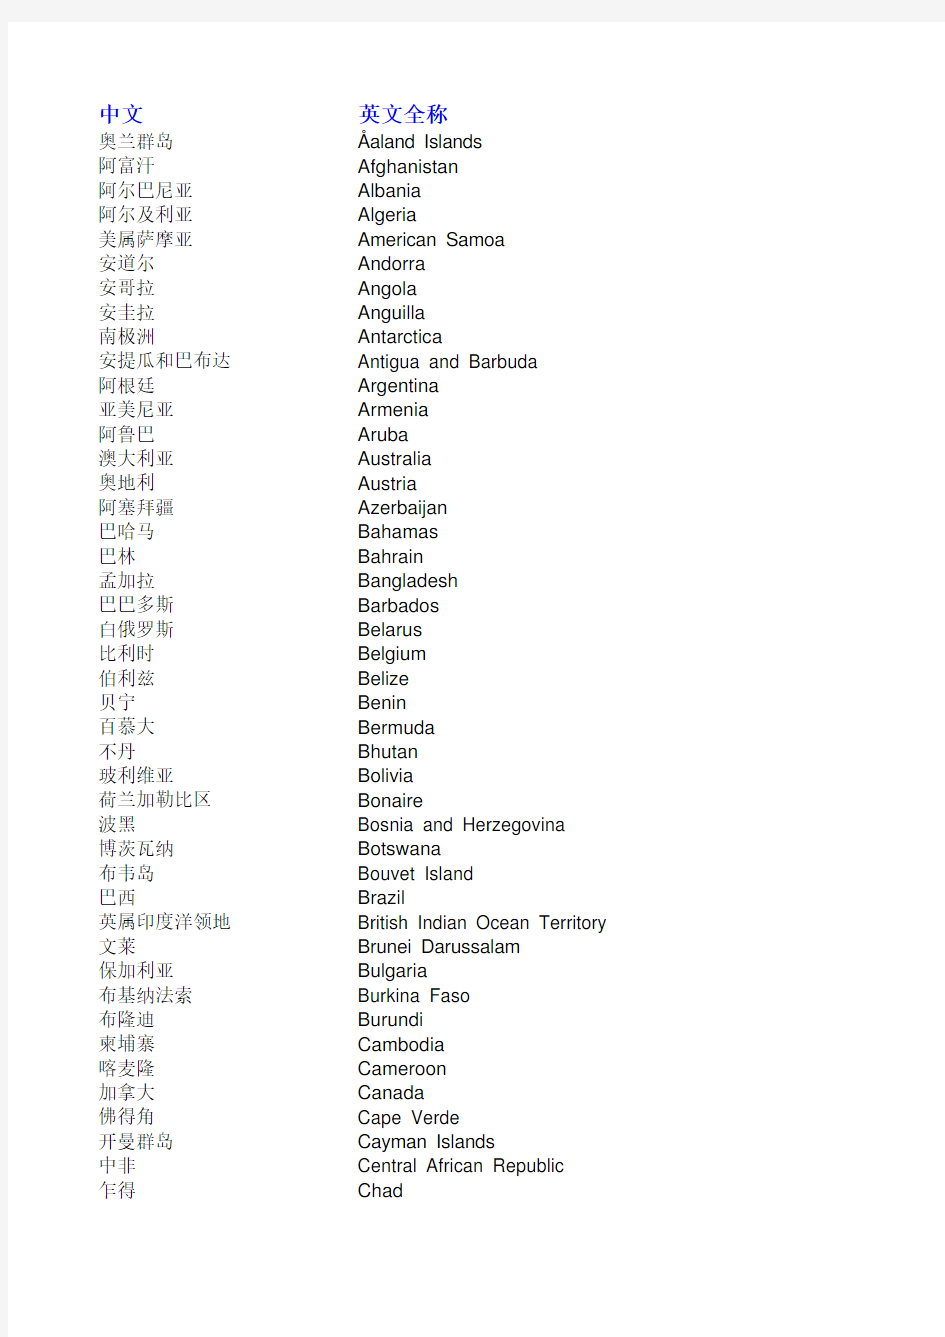 全球250个国家中英文名称及缩写